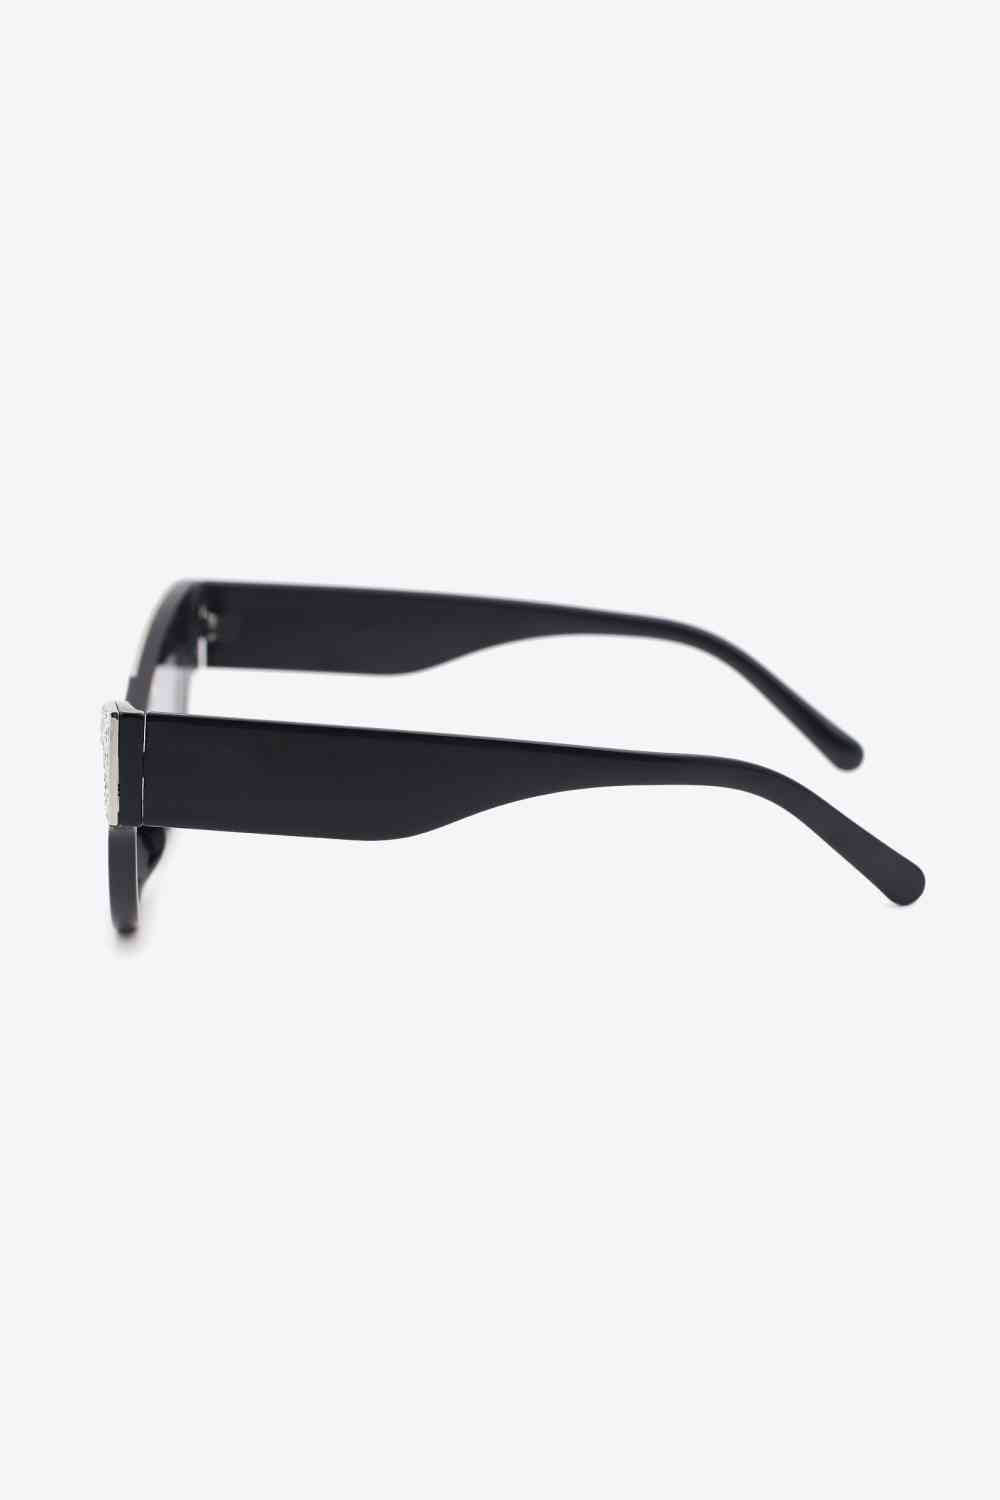 TEEK - Regal Rhinestone Trim Cat-Eye Sunglasses EYEGLASSES TEEK Trend   